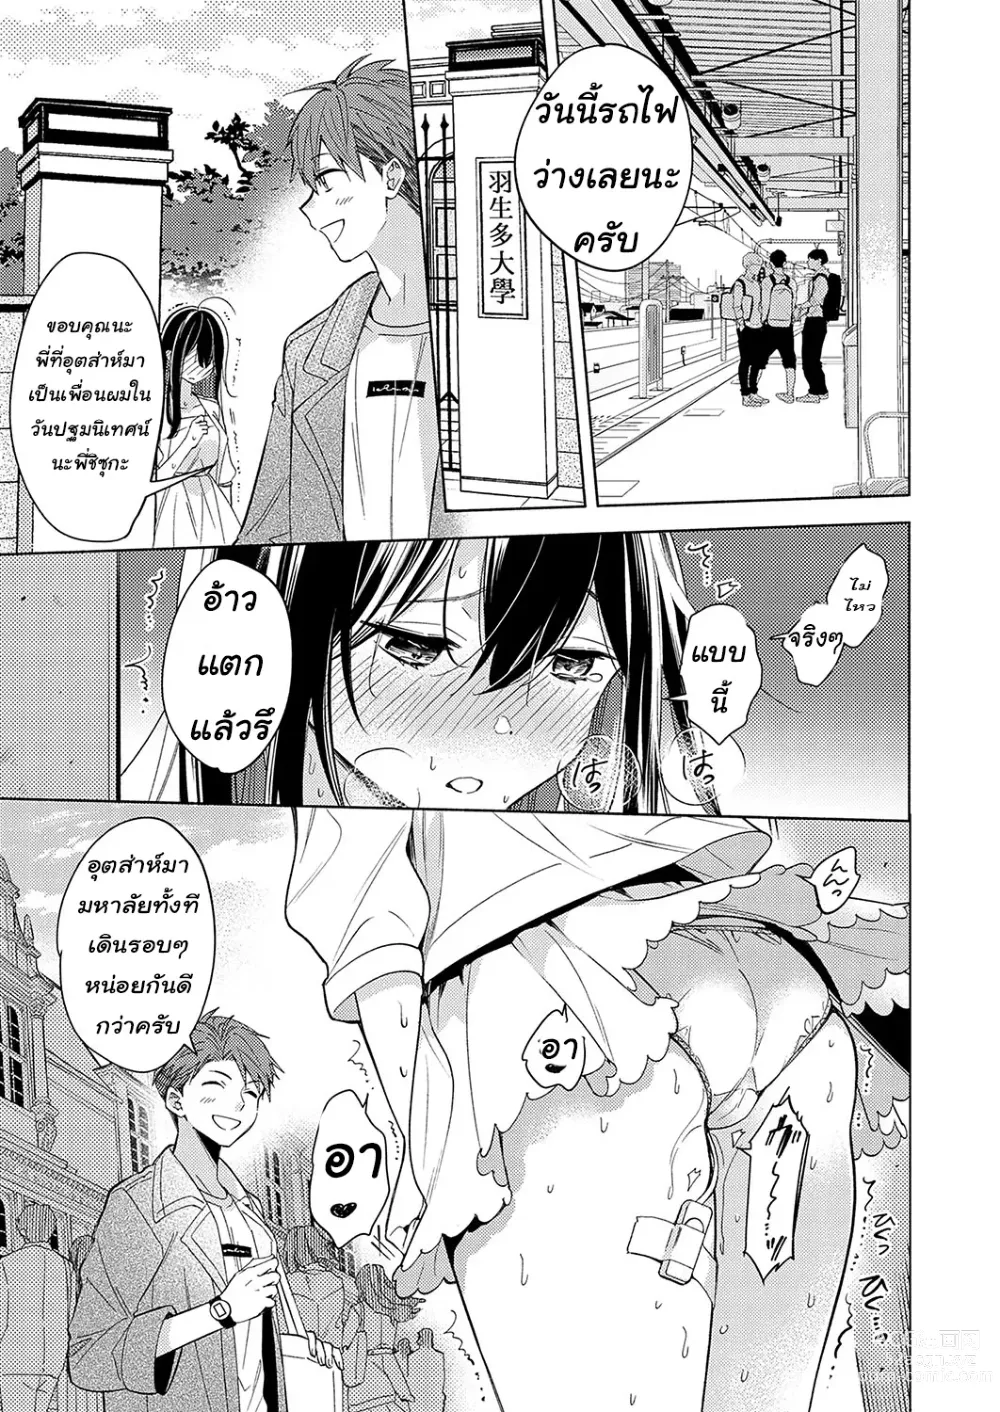 Page 13 of manga Neechan ga doukyusei ni naru made 30-nichi - onani chudoku ane no hiki komori dasshutsu keikaku